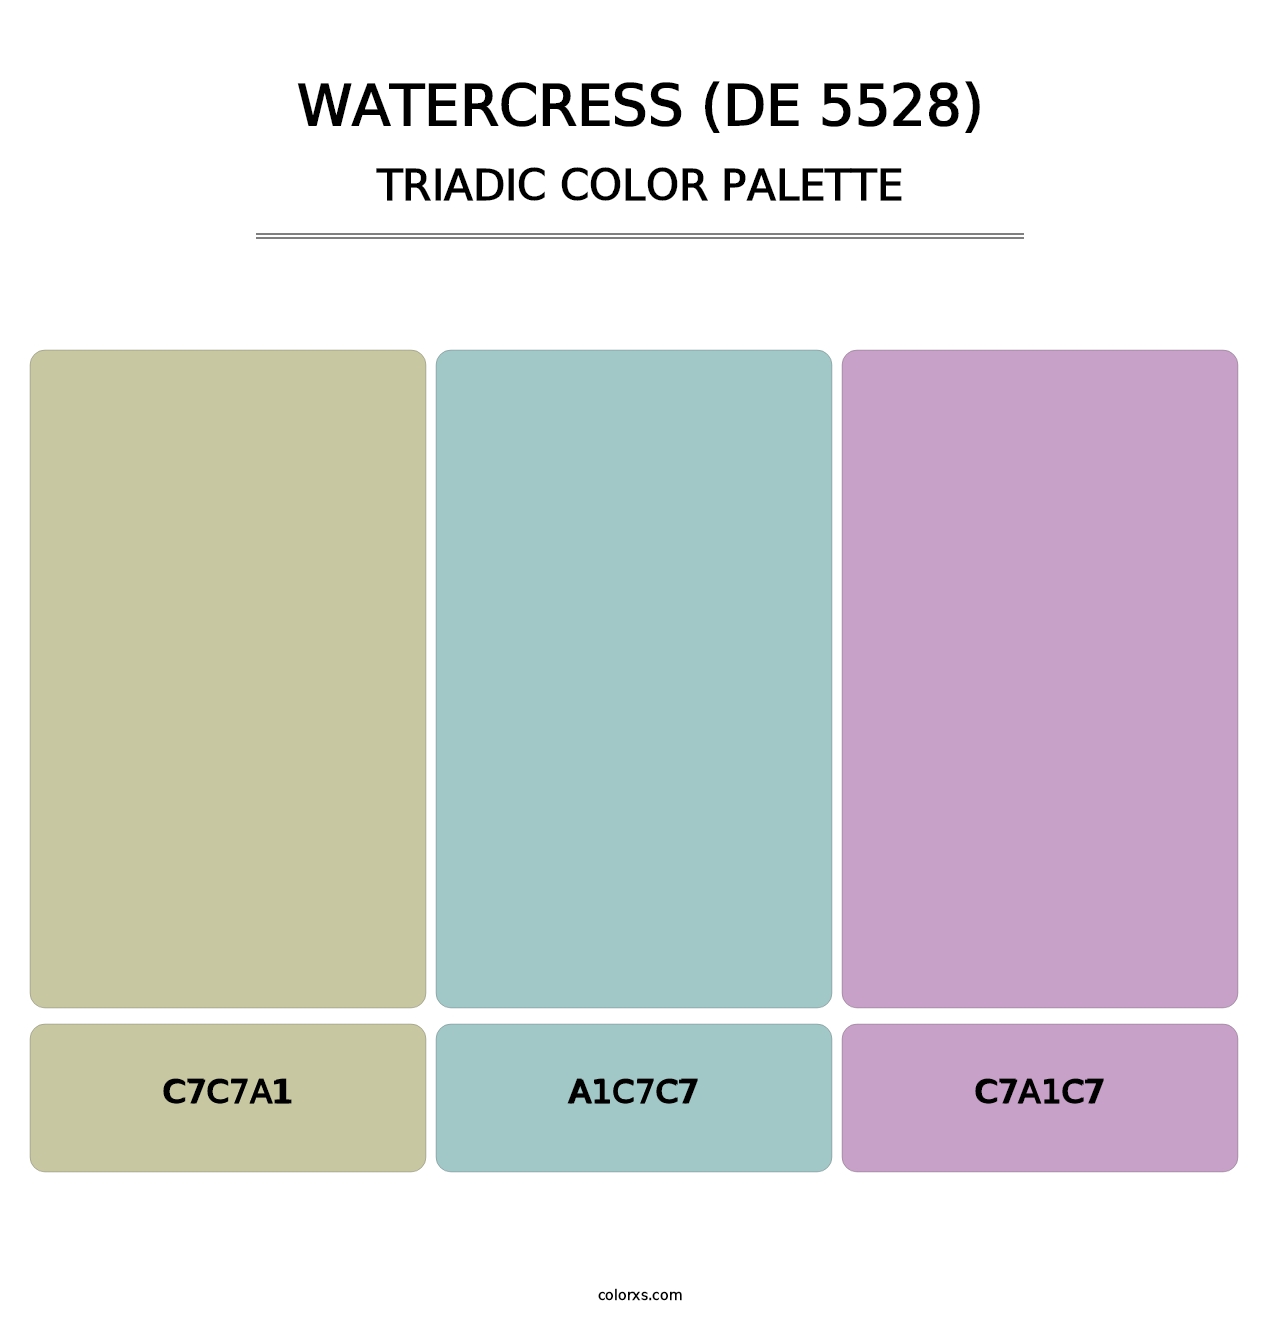 Watercress (DE 5528) - Triadic Color Palette